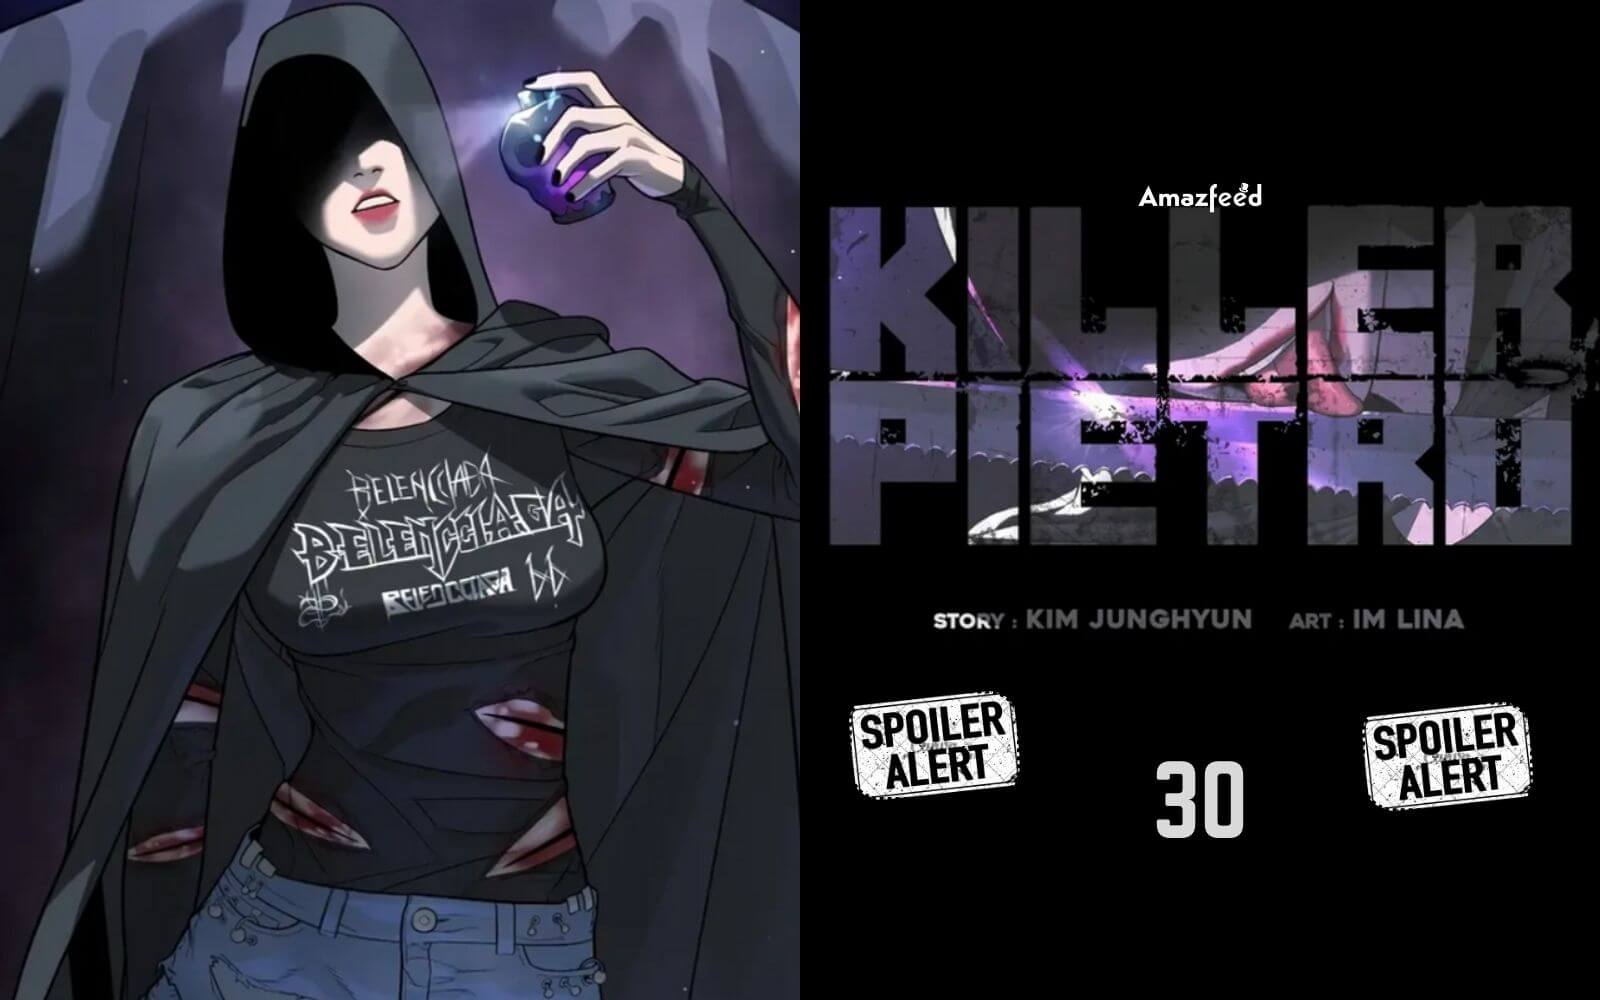 Killer Peter Chapter 30 Official Spoiler